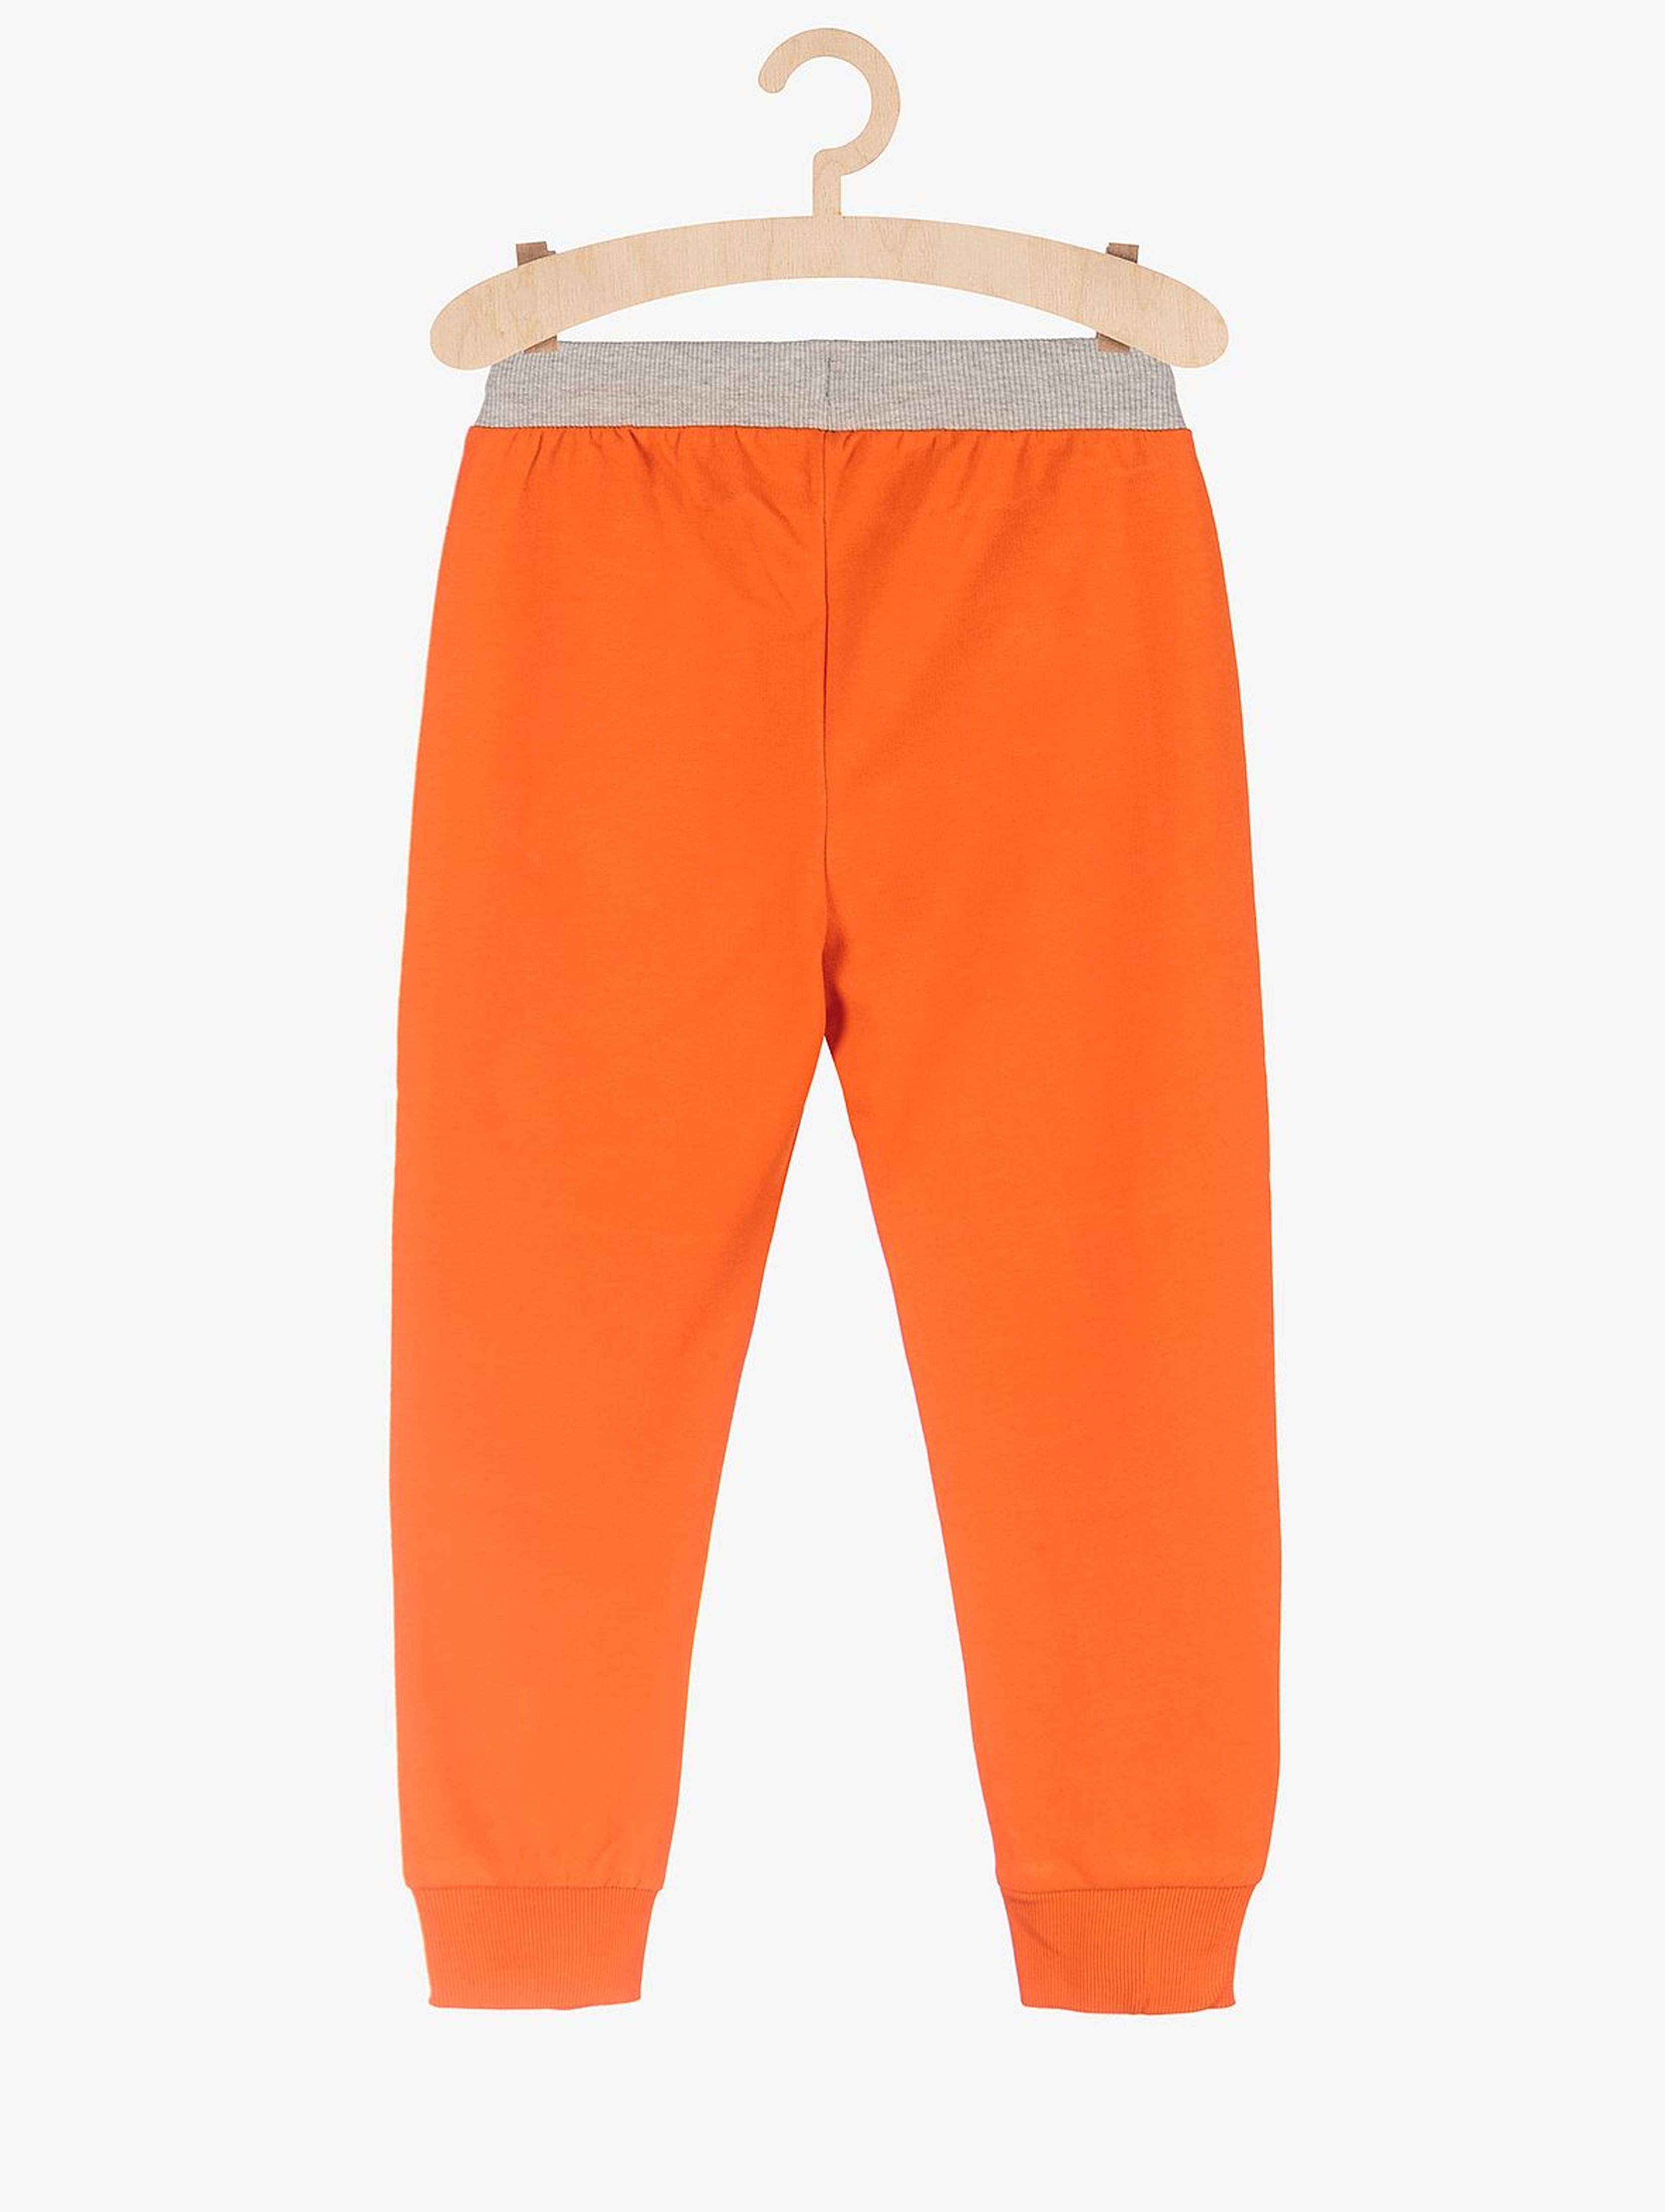 Spodnie dresowe chłopięce - pomarańczowe